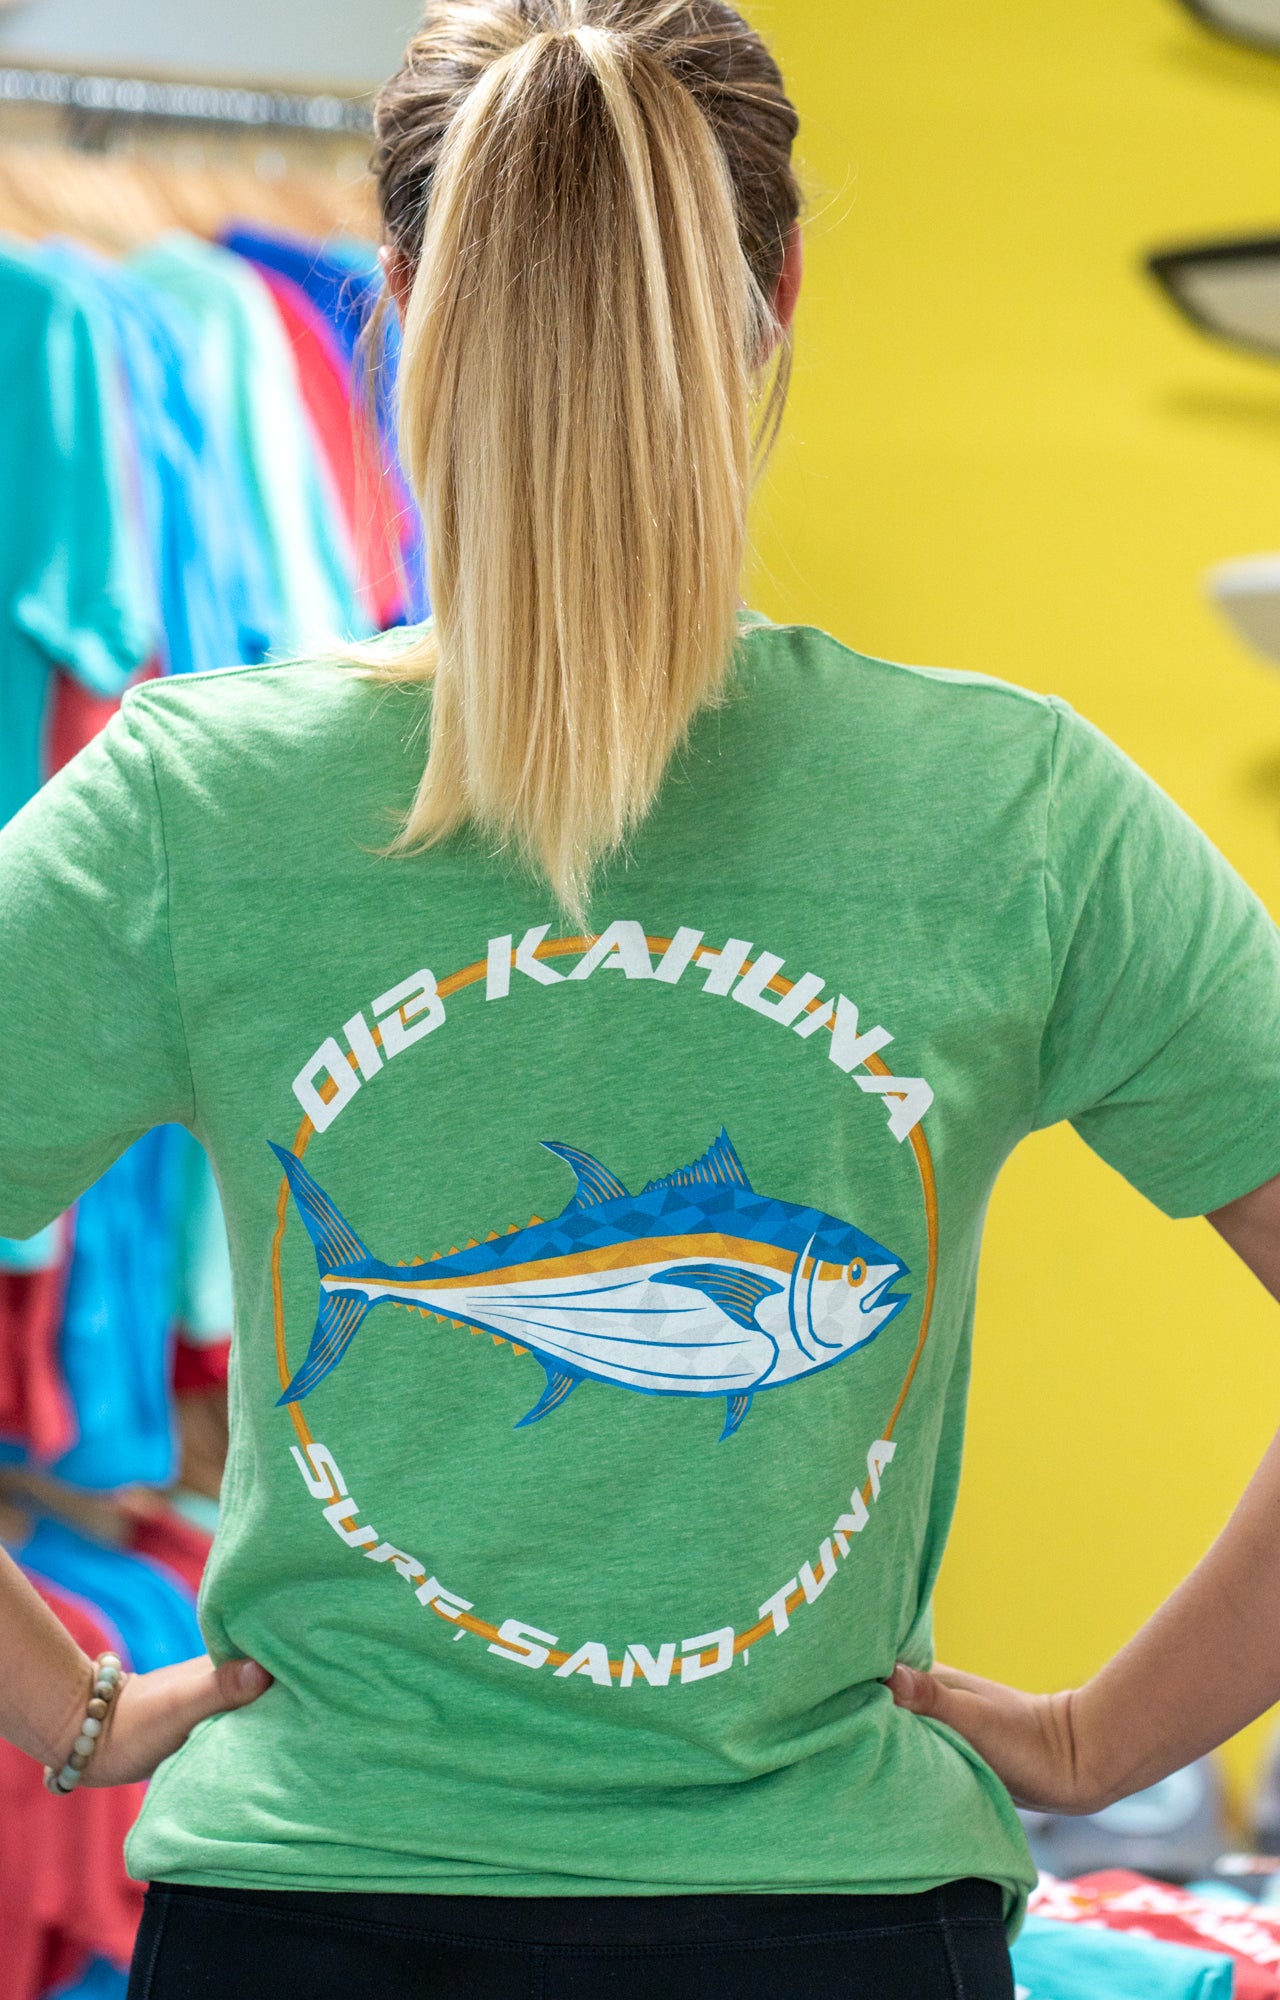 Kahuna Tuna fishing shirt